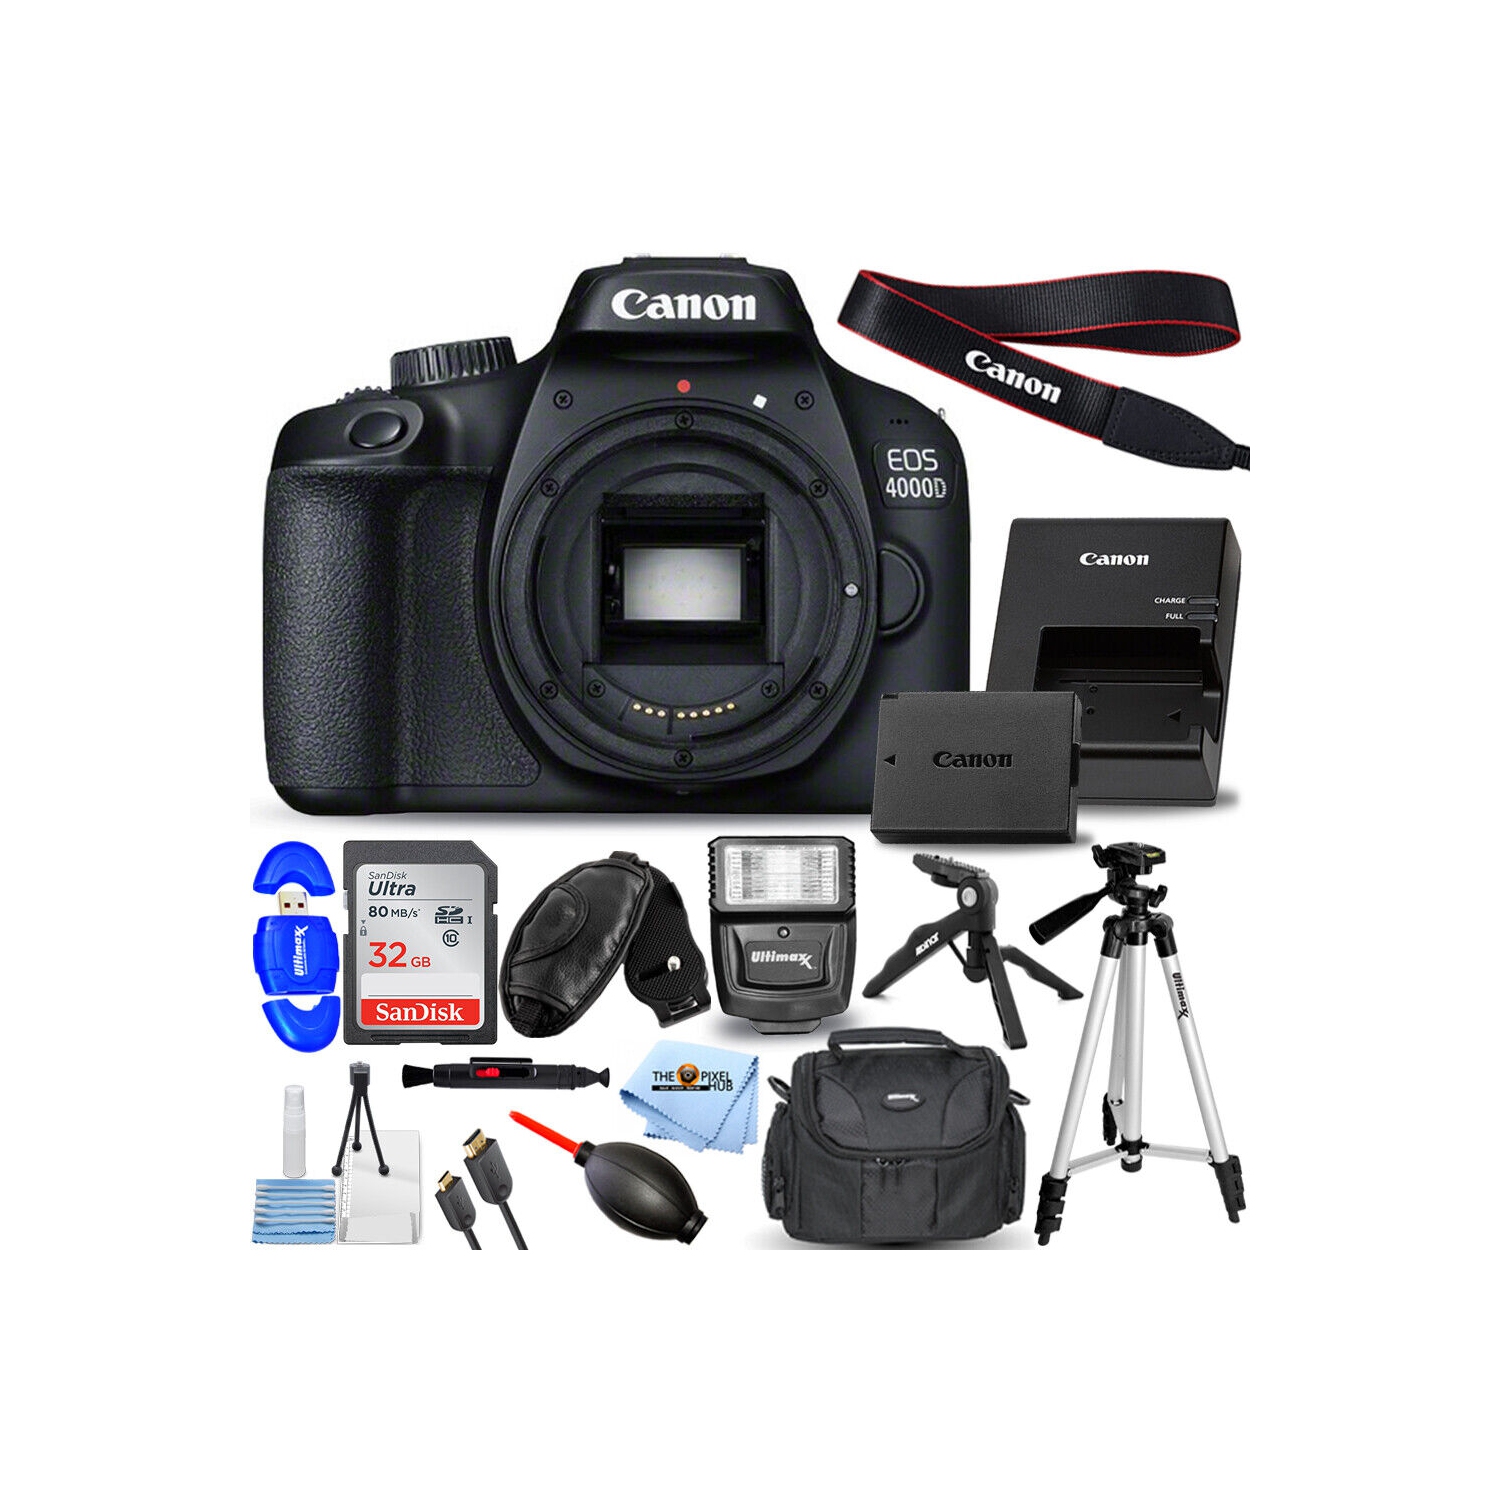 Canon EOS 4000D / Rebel T100 DSLR Camera (Body) + 32GB + Flash + Tripod Bundle